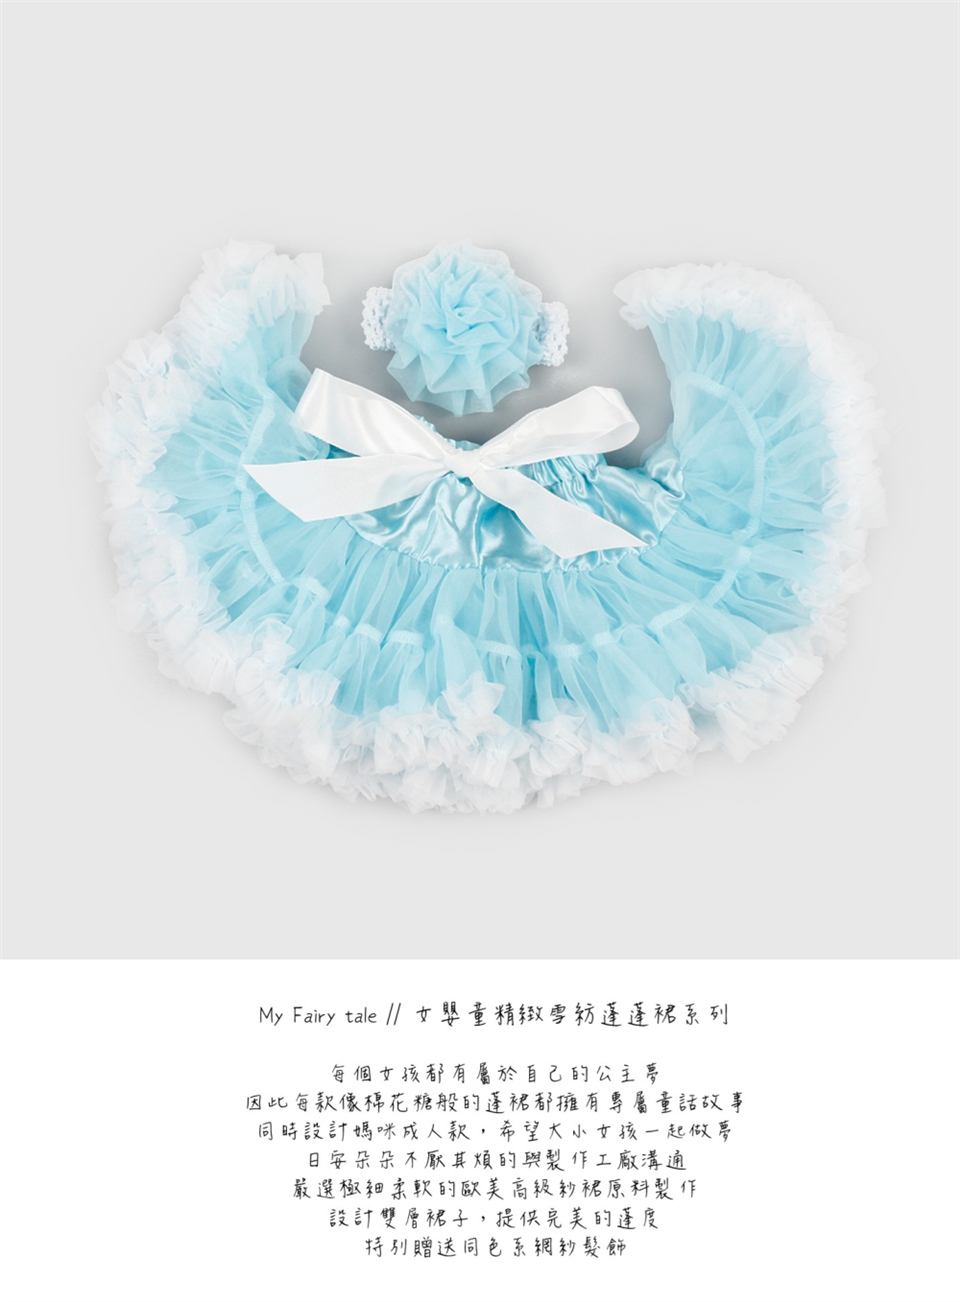 日安朵朵 女嬰童蓬蓬裙夢幻禮盒 - 冰雪奇緣 0-2歲(80cm)